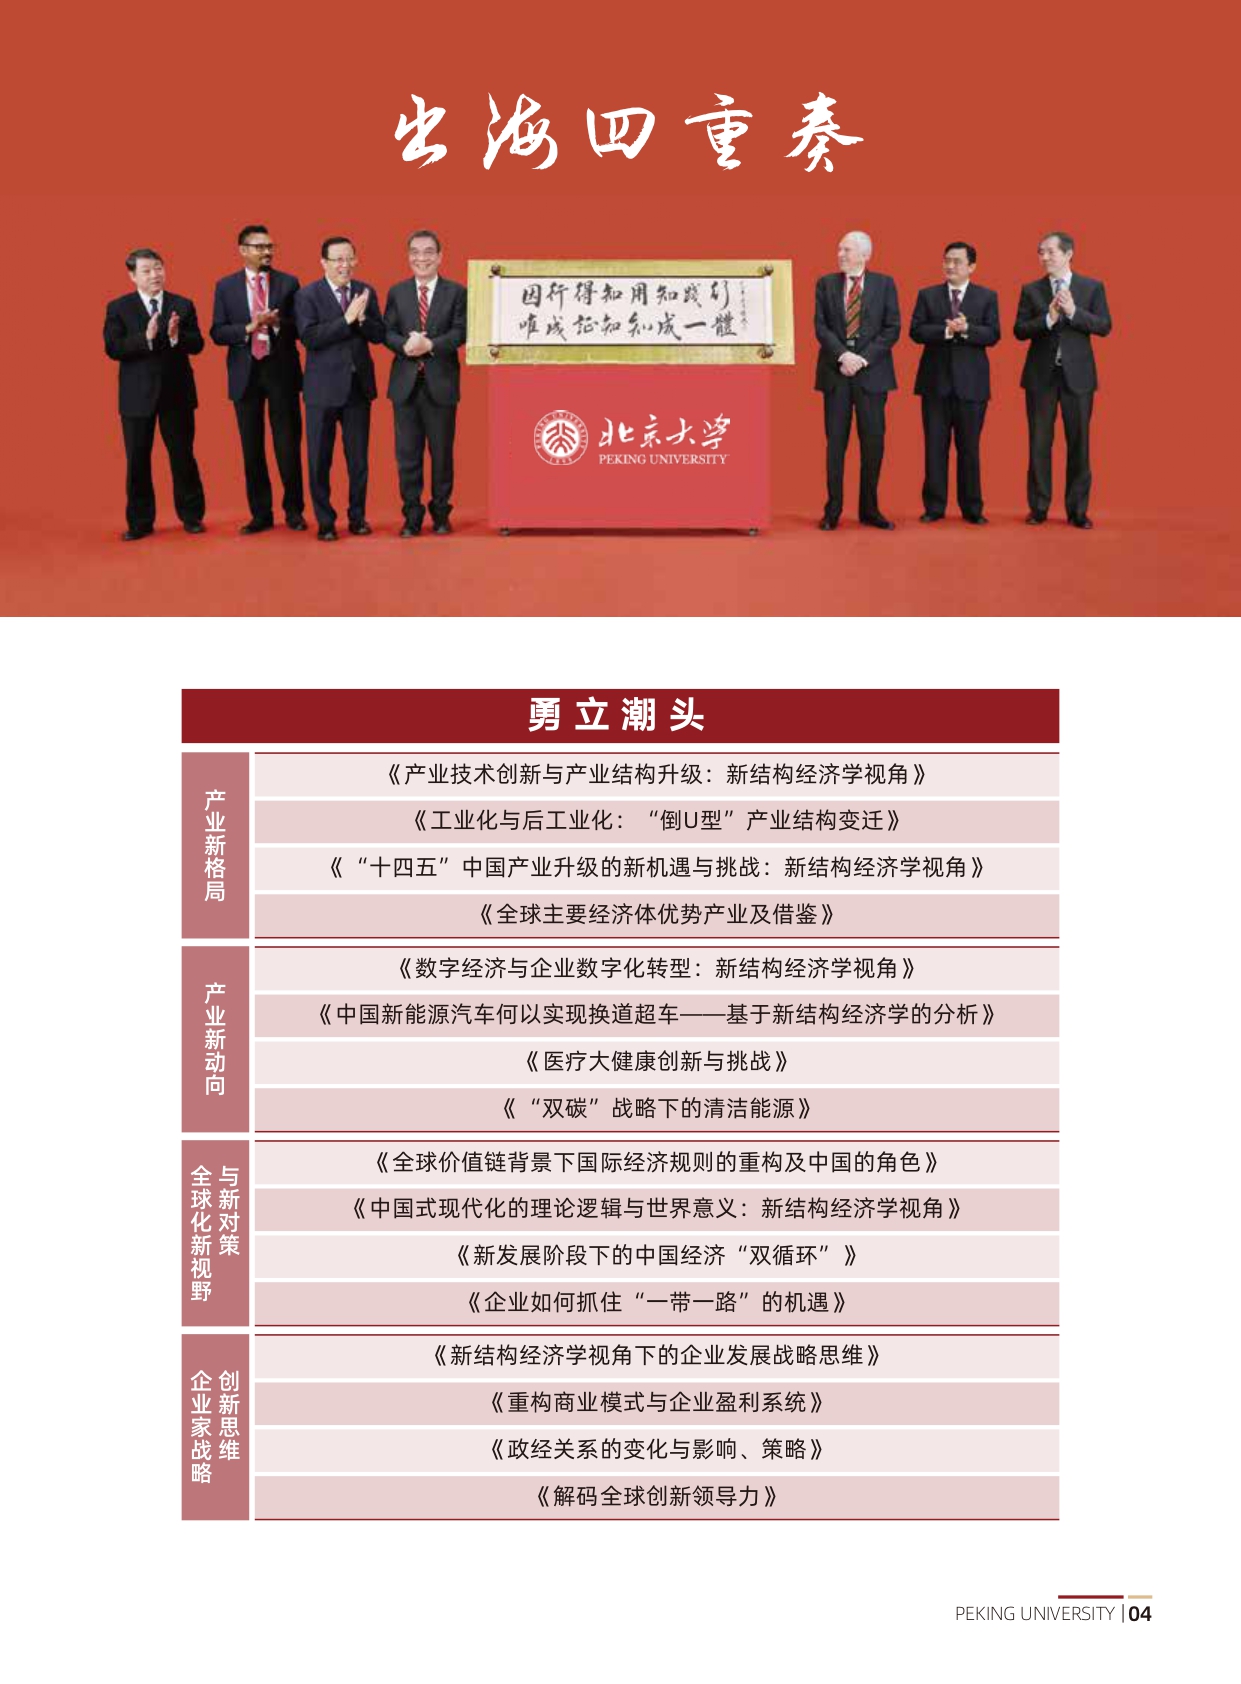 北京大学中国企业全球化与品牌出海实践项目研修班(1)_page-0005.jpg